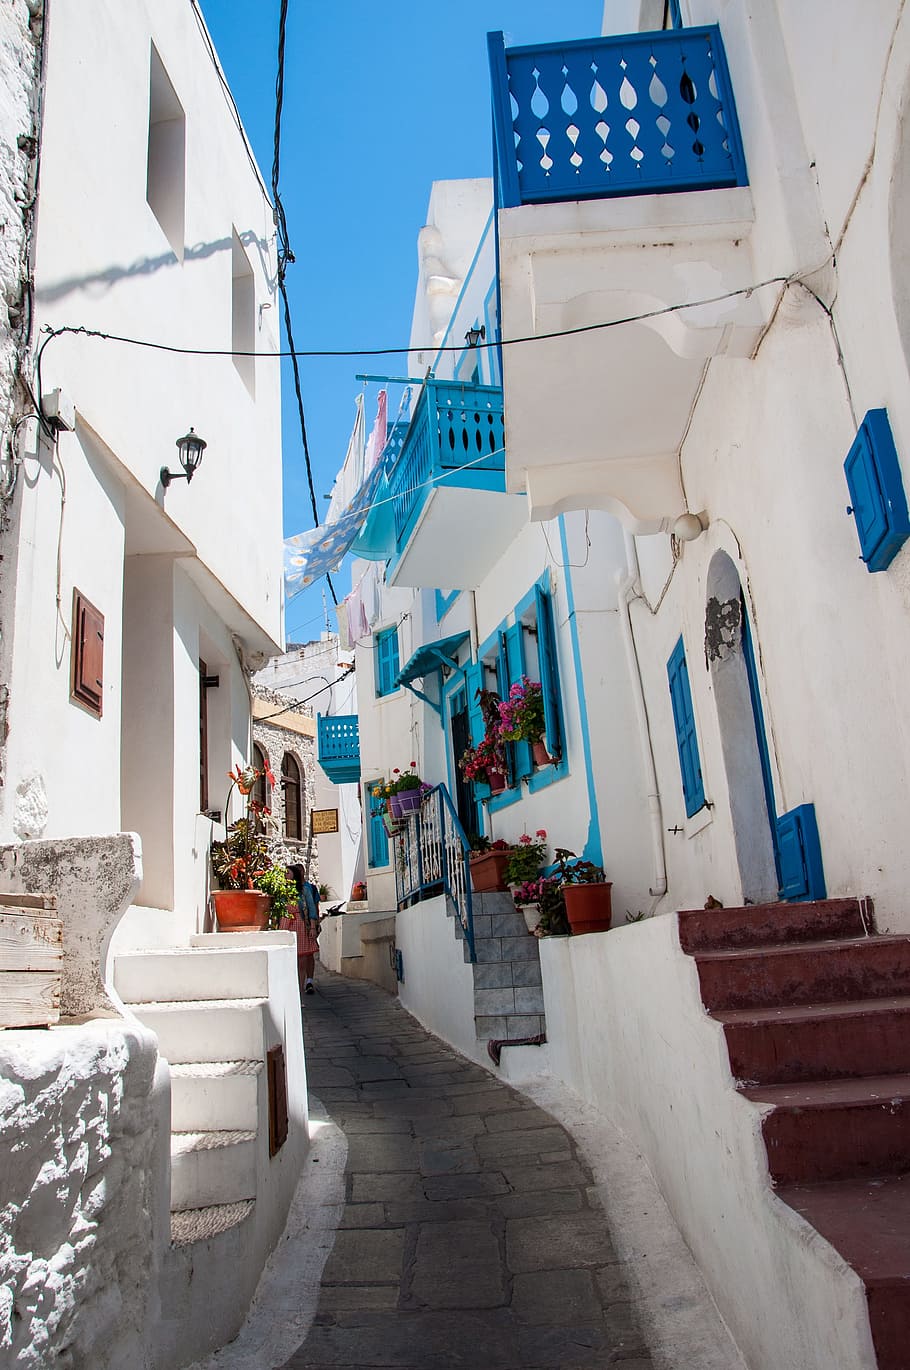 Férias, Grécia, Mar Egeu, Branco, azul, grego tradicional, casas brancas, arquitetura, casas, turismo